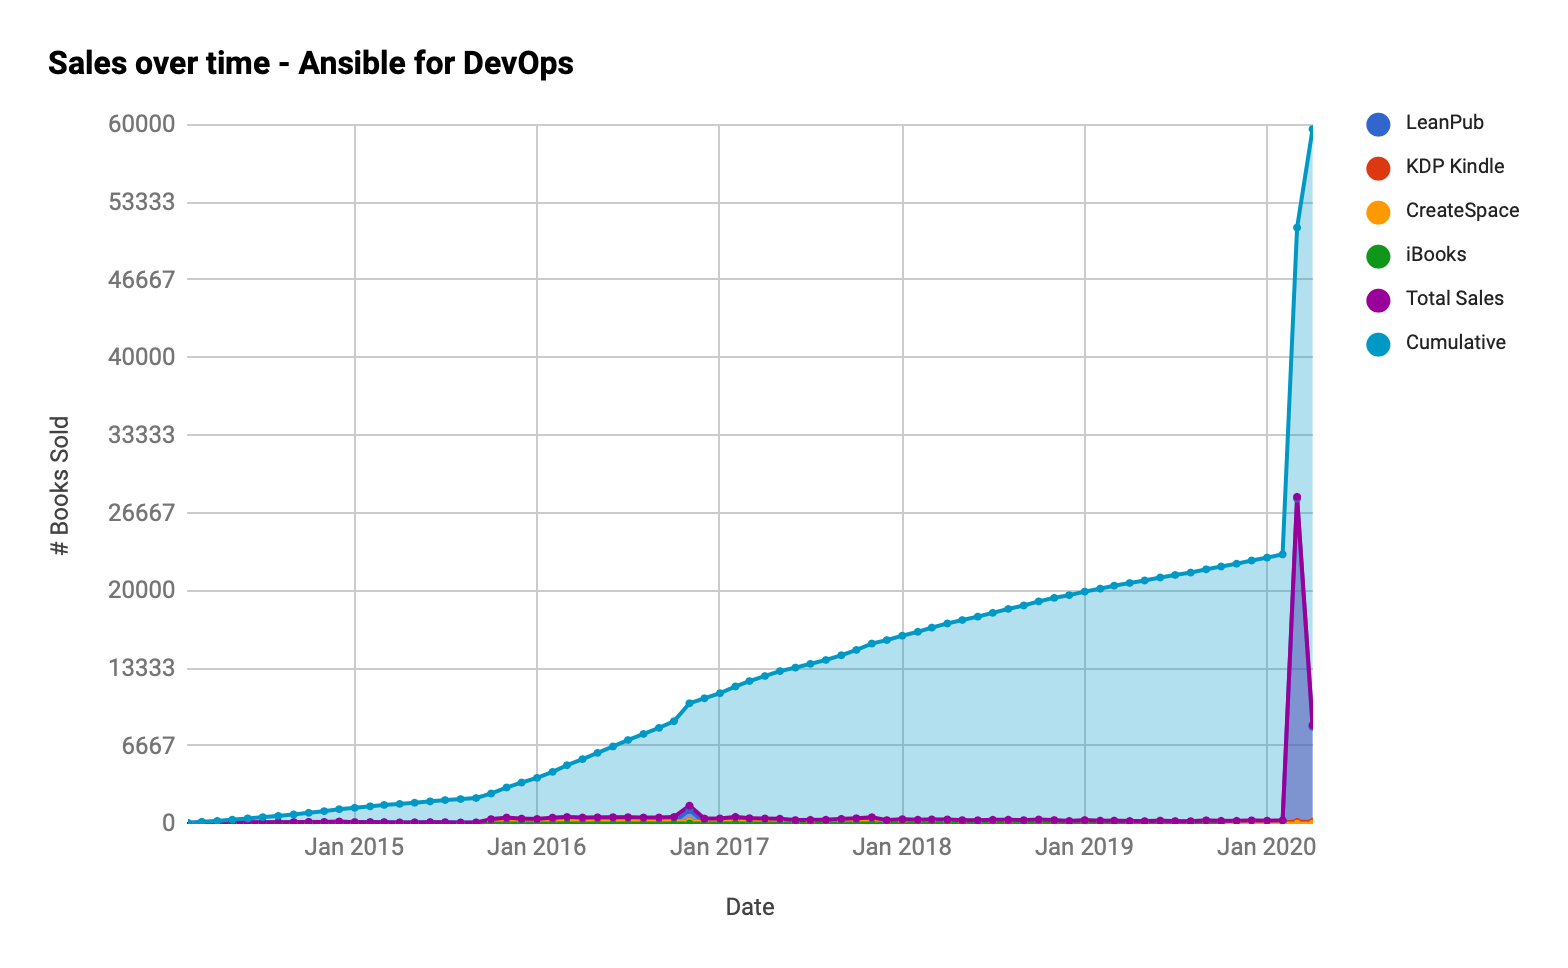 Ansible for DevOps - Cumulative Sales over Time